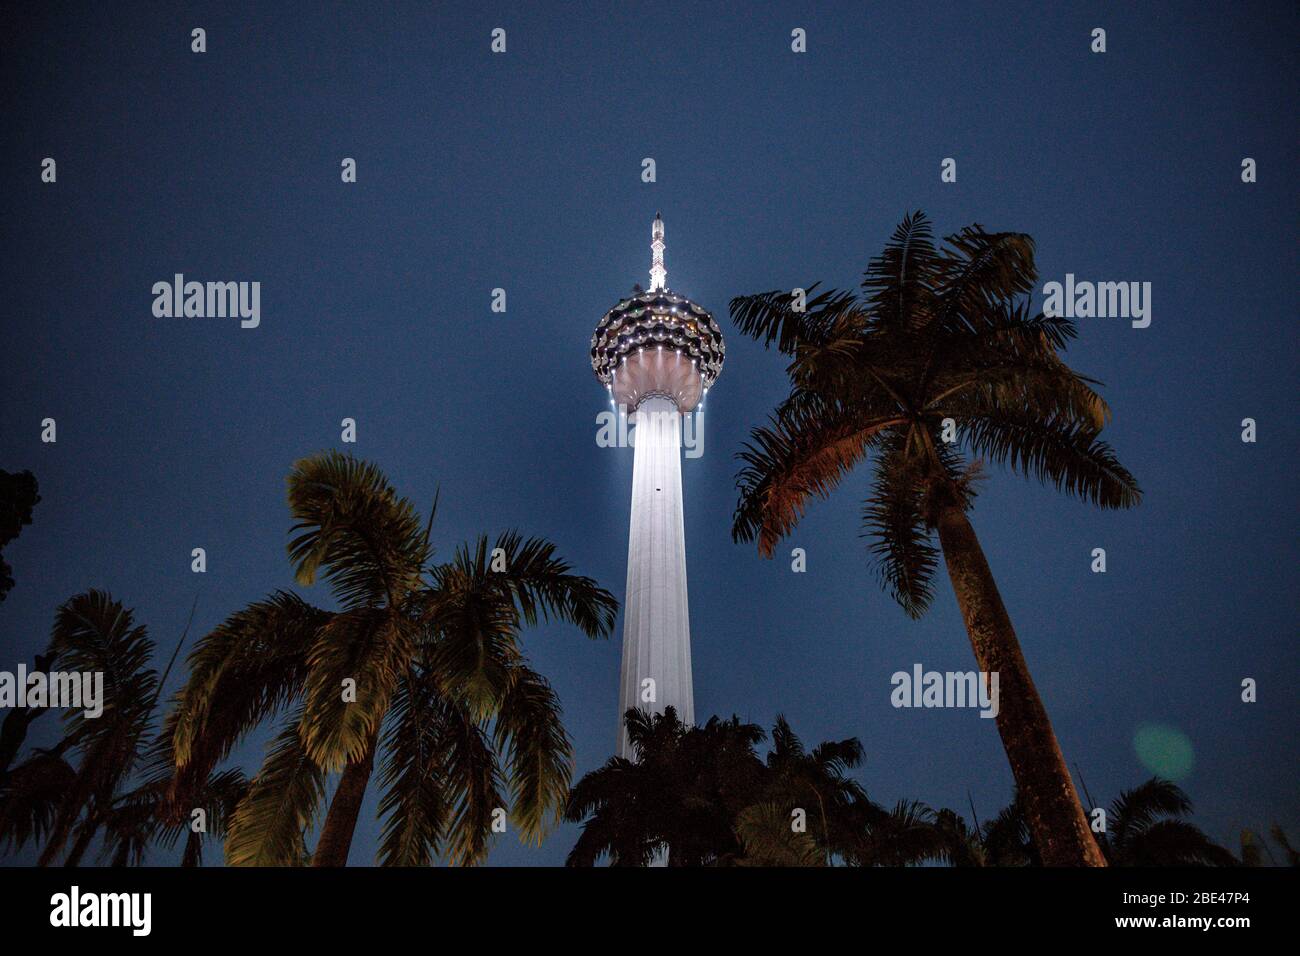 Kuala Lumpur communication tower and palms in a night view from a park - Torre de comunicaciones y palmeras en una vista nocturna desde un parque Stock Photo